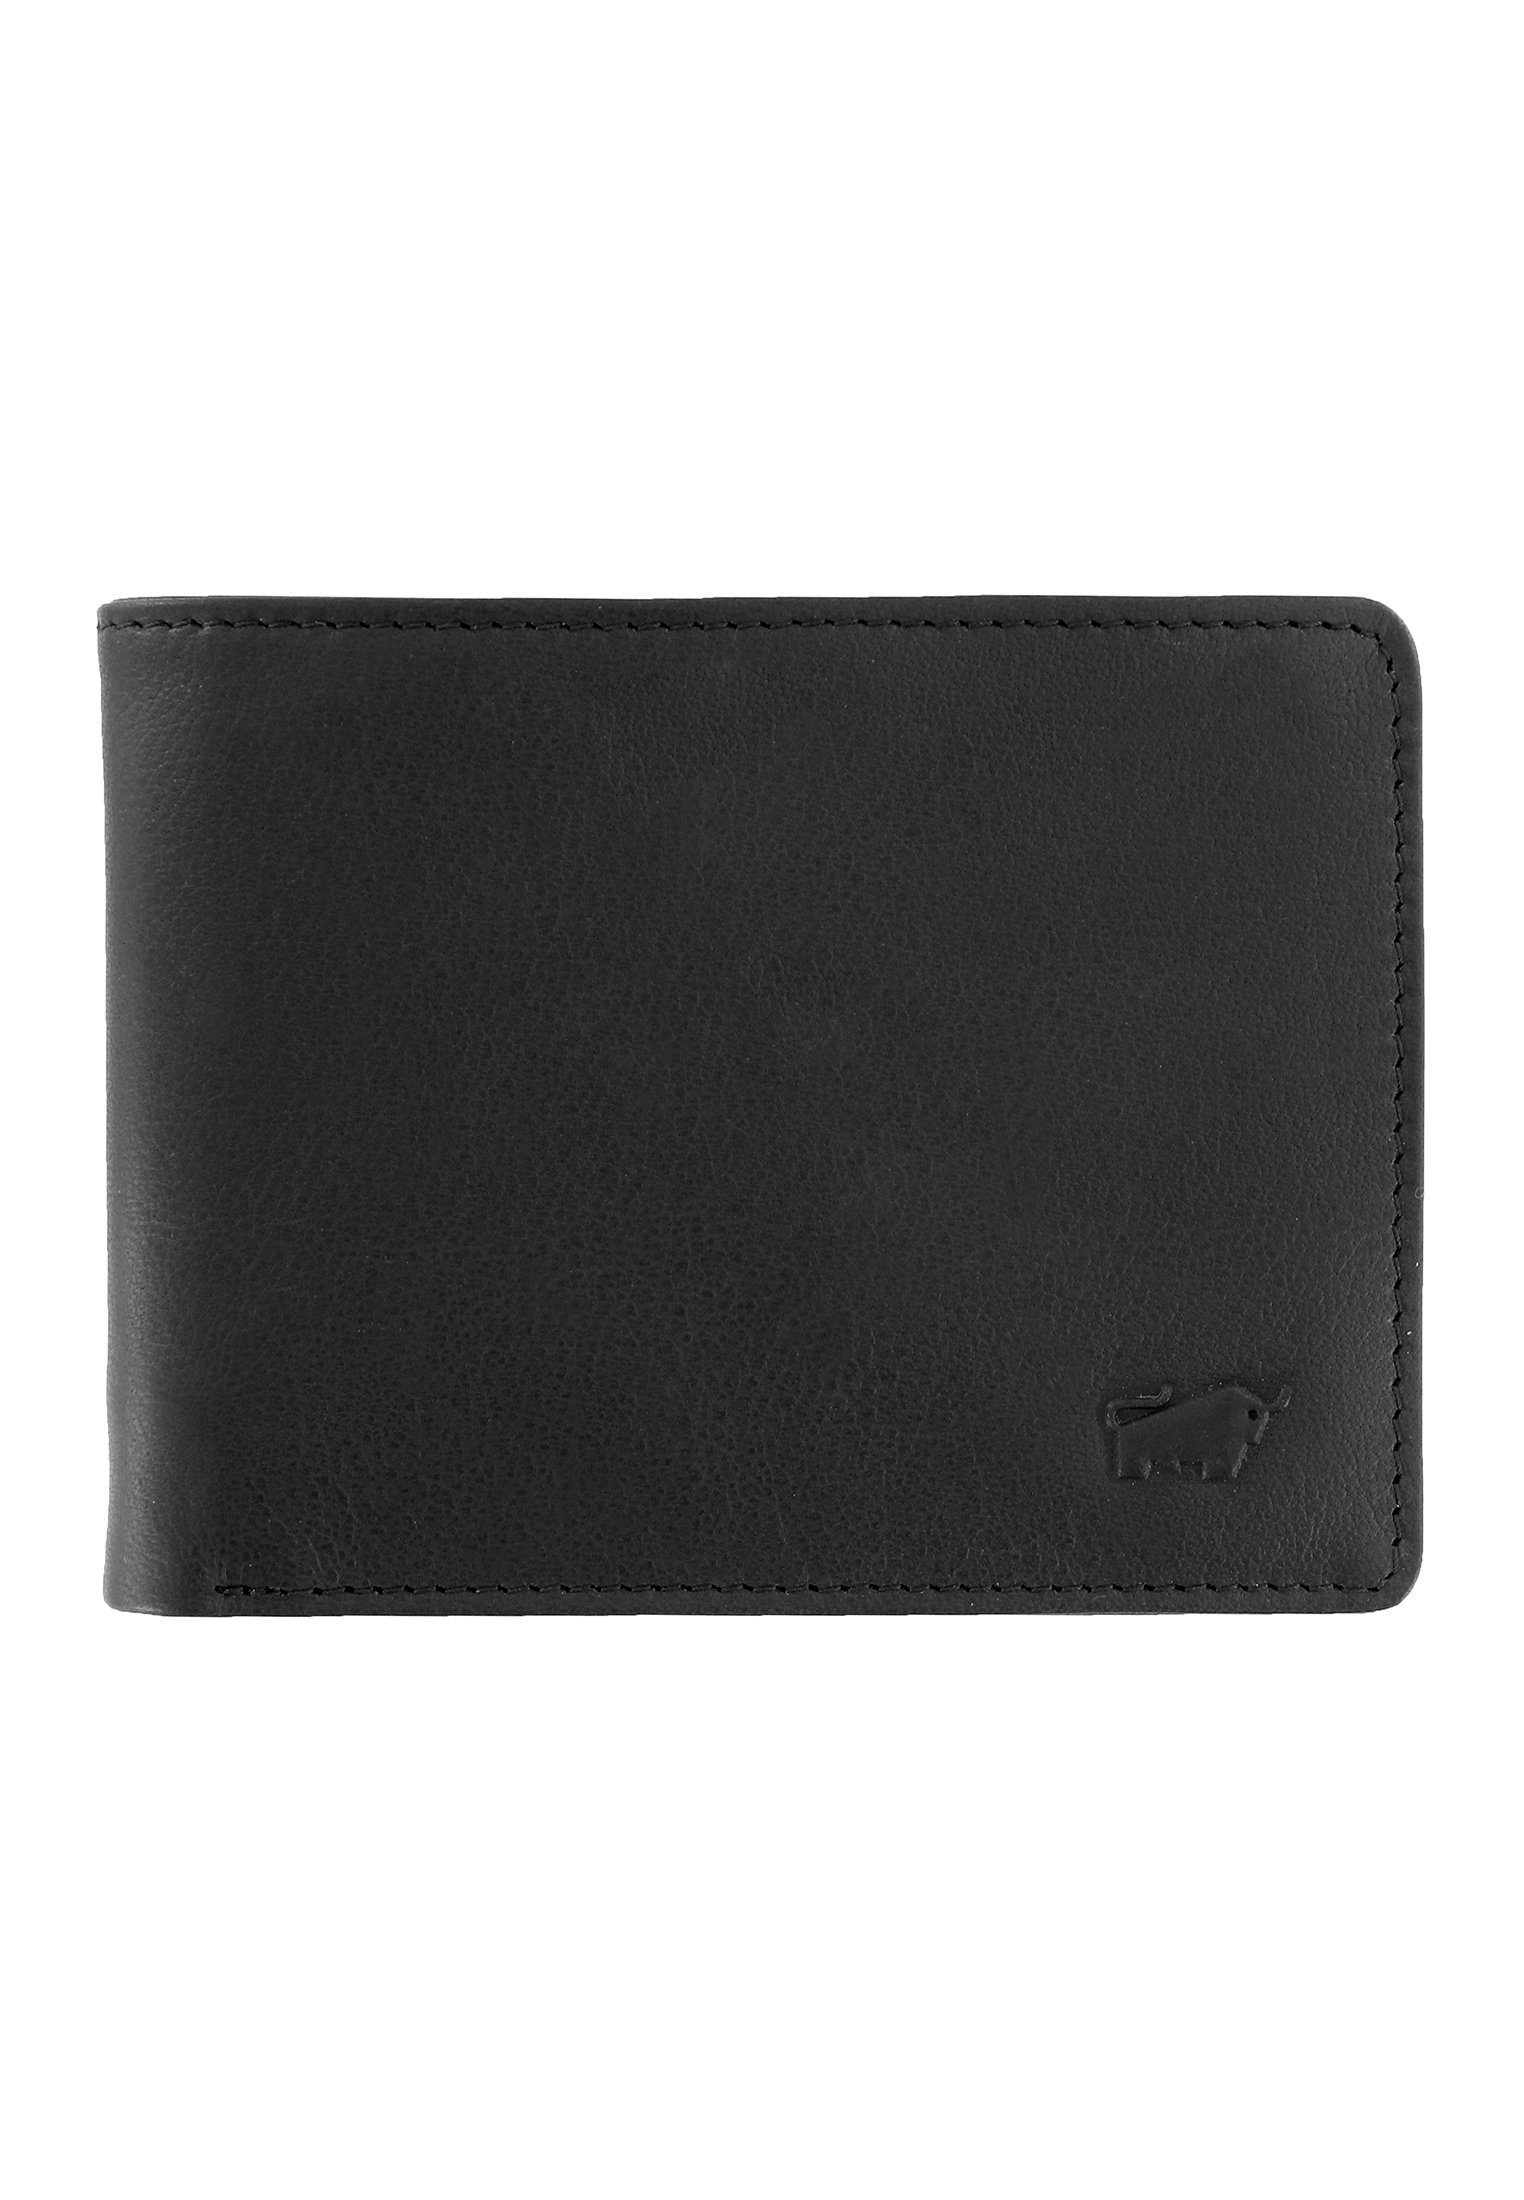 Braun Büffel Geldbörse ARIZONA 2.0 Geldbörse S 5CS schwarz, in kompaktem Format